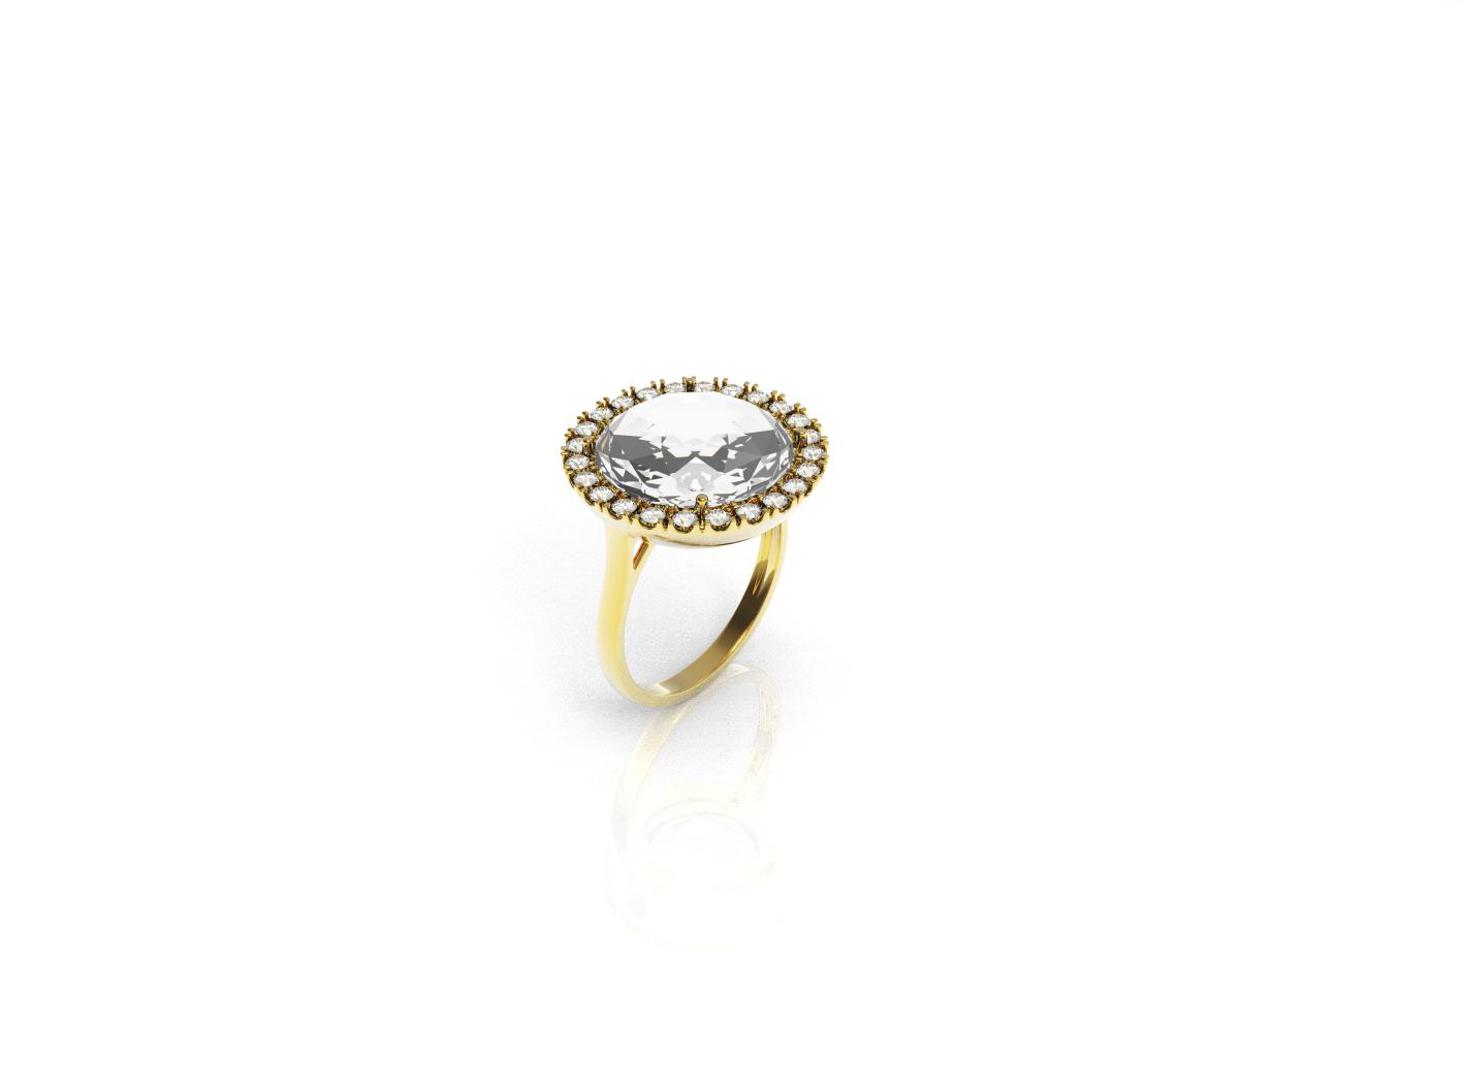 Zlatni prsten, red.cijena 3015kn, sada 1959,75kn - ZAKS